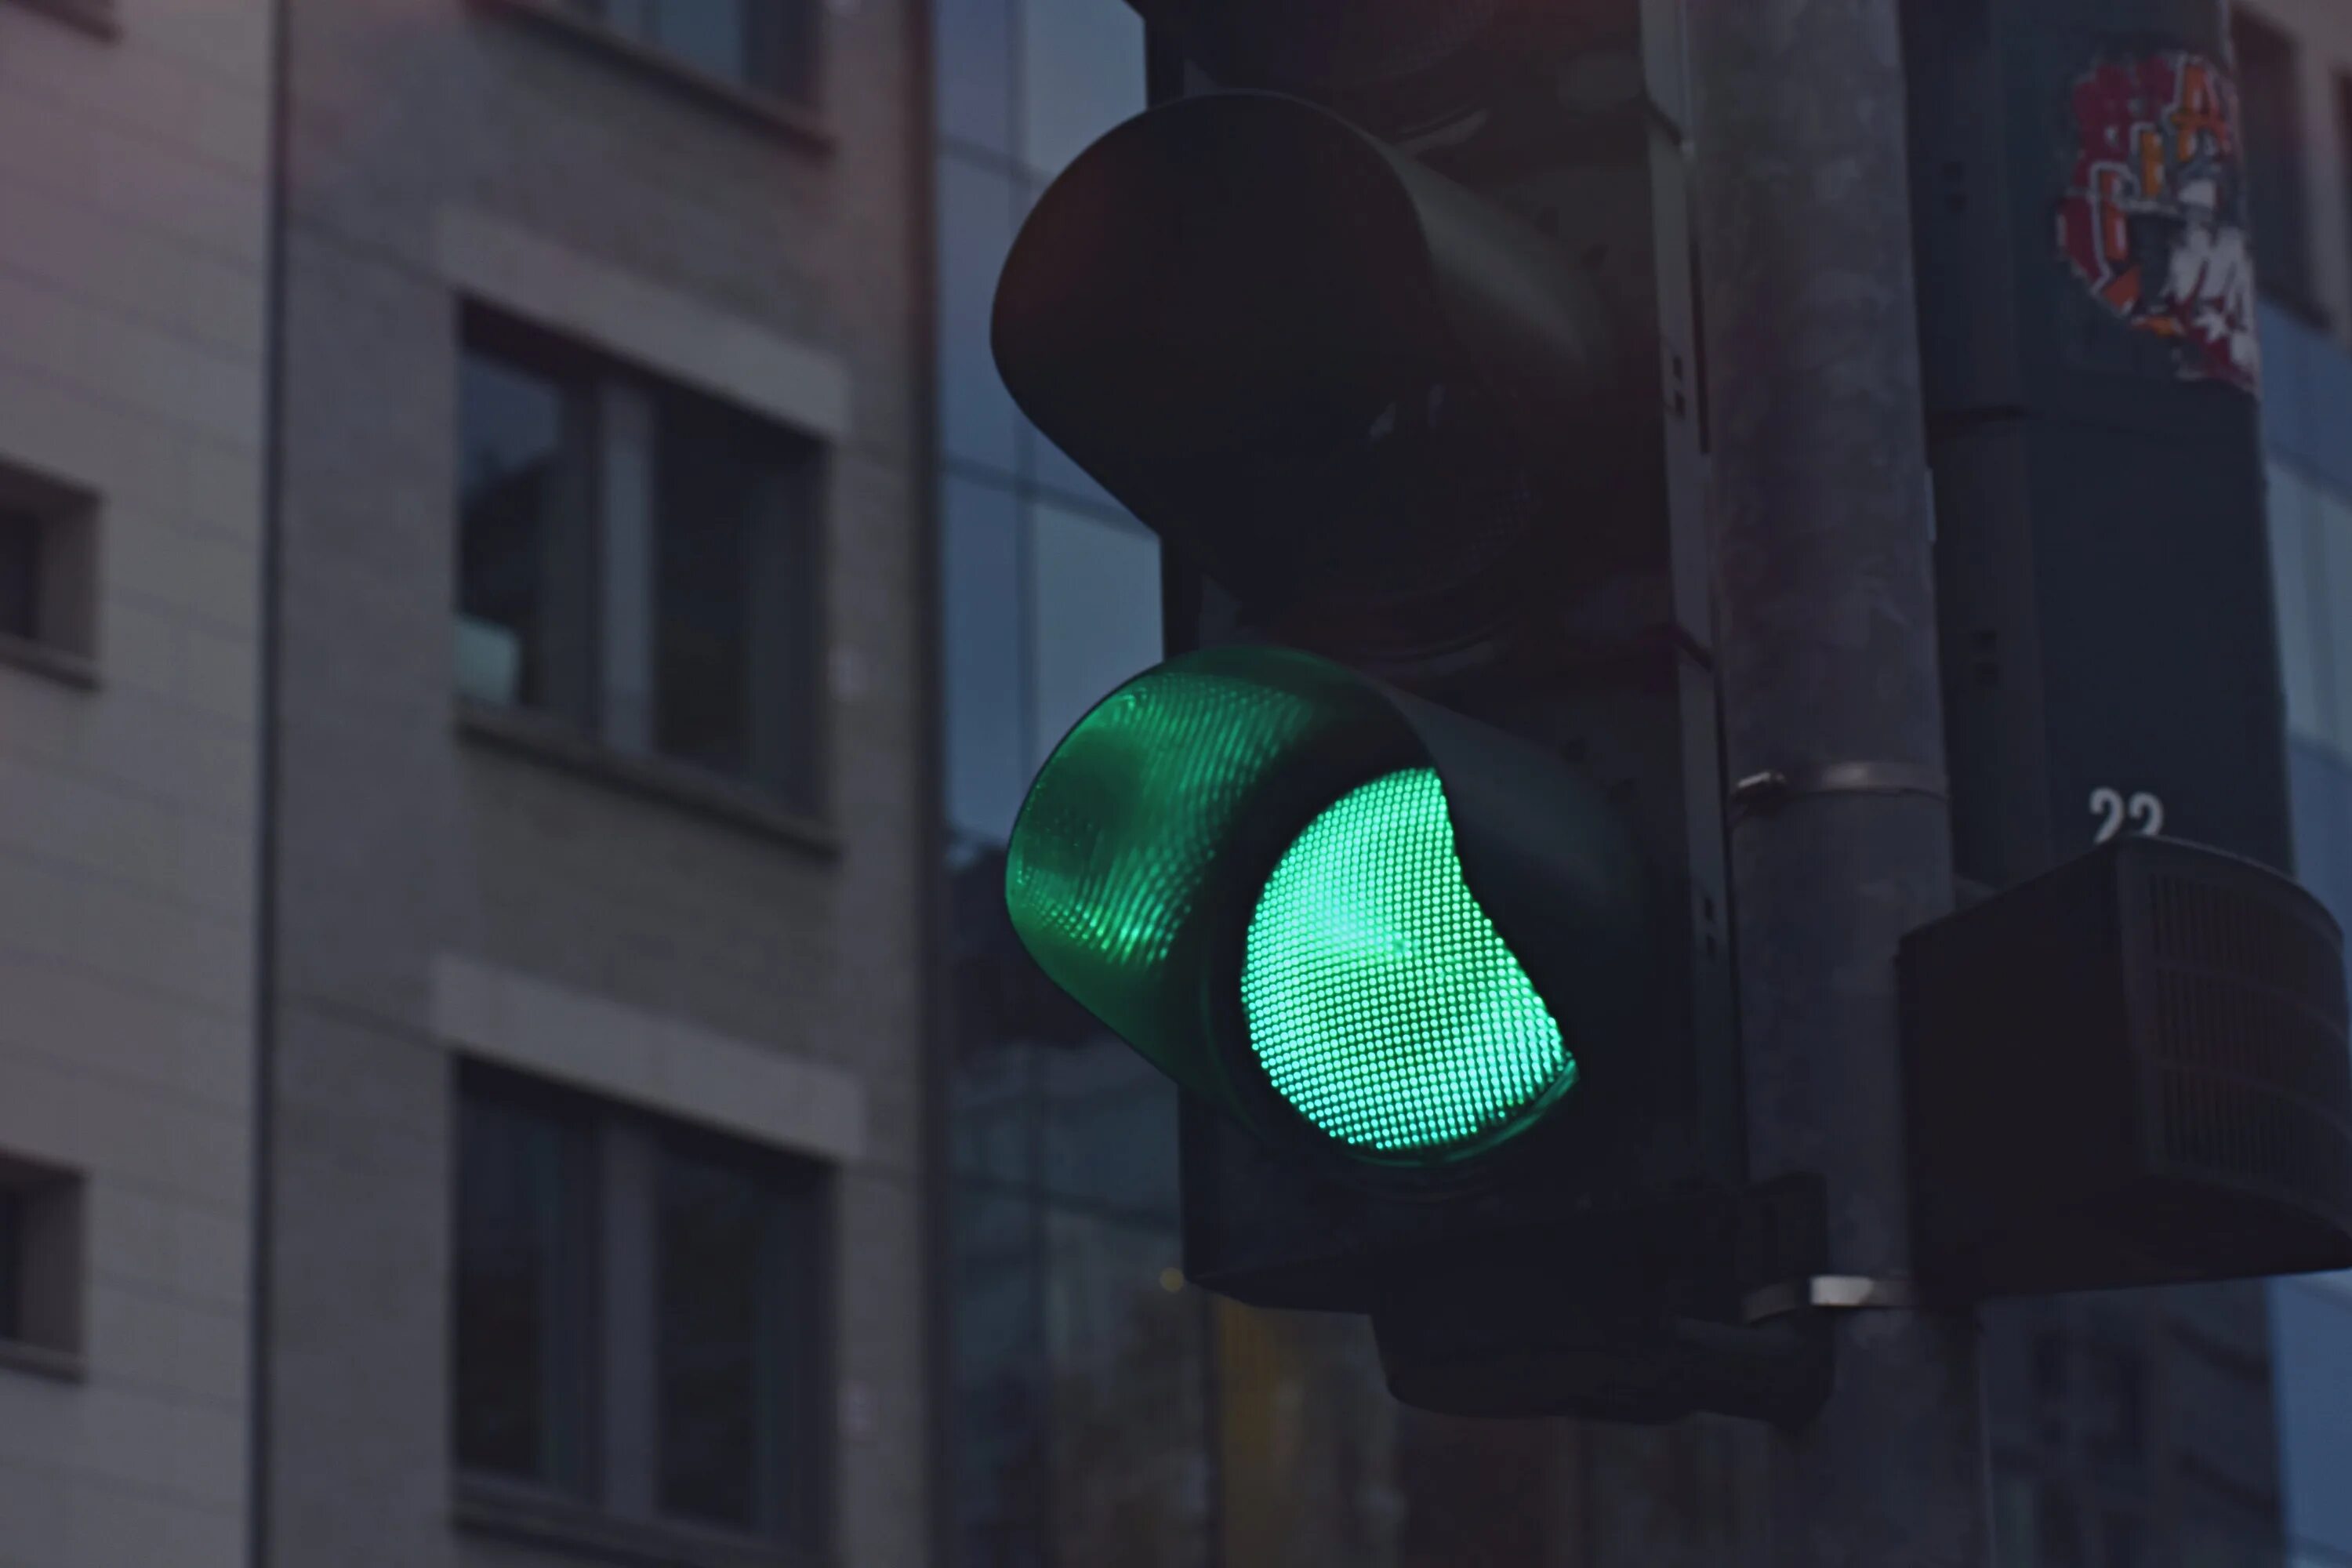 Дорогу на зеленый свет светофора. Зеленый сигнал светофора. Зеленый цвет светофора. Зеленый свет светофора. Красивый светофор.